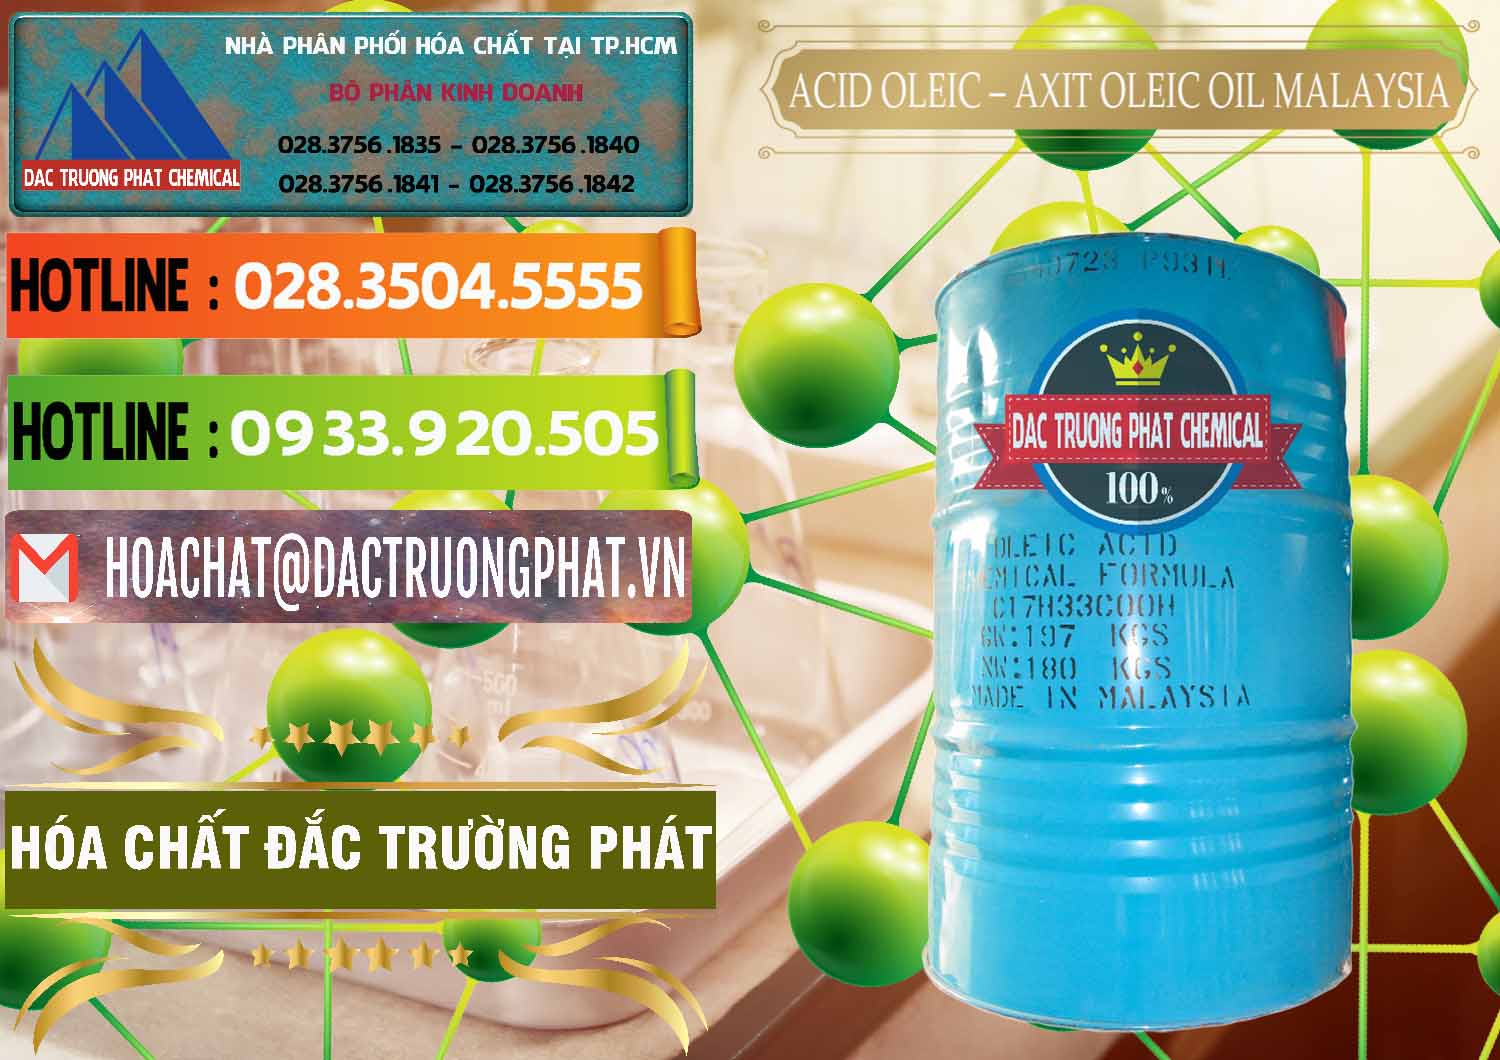 Chuyên bán & phân phối Acid Oleic – Axit Oleic Oil Malaysia - 0013 - Chuyên phân phối _ nhập khẩu hóa chất tại TP.HCM - cungcaphoachat.com.vn